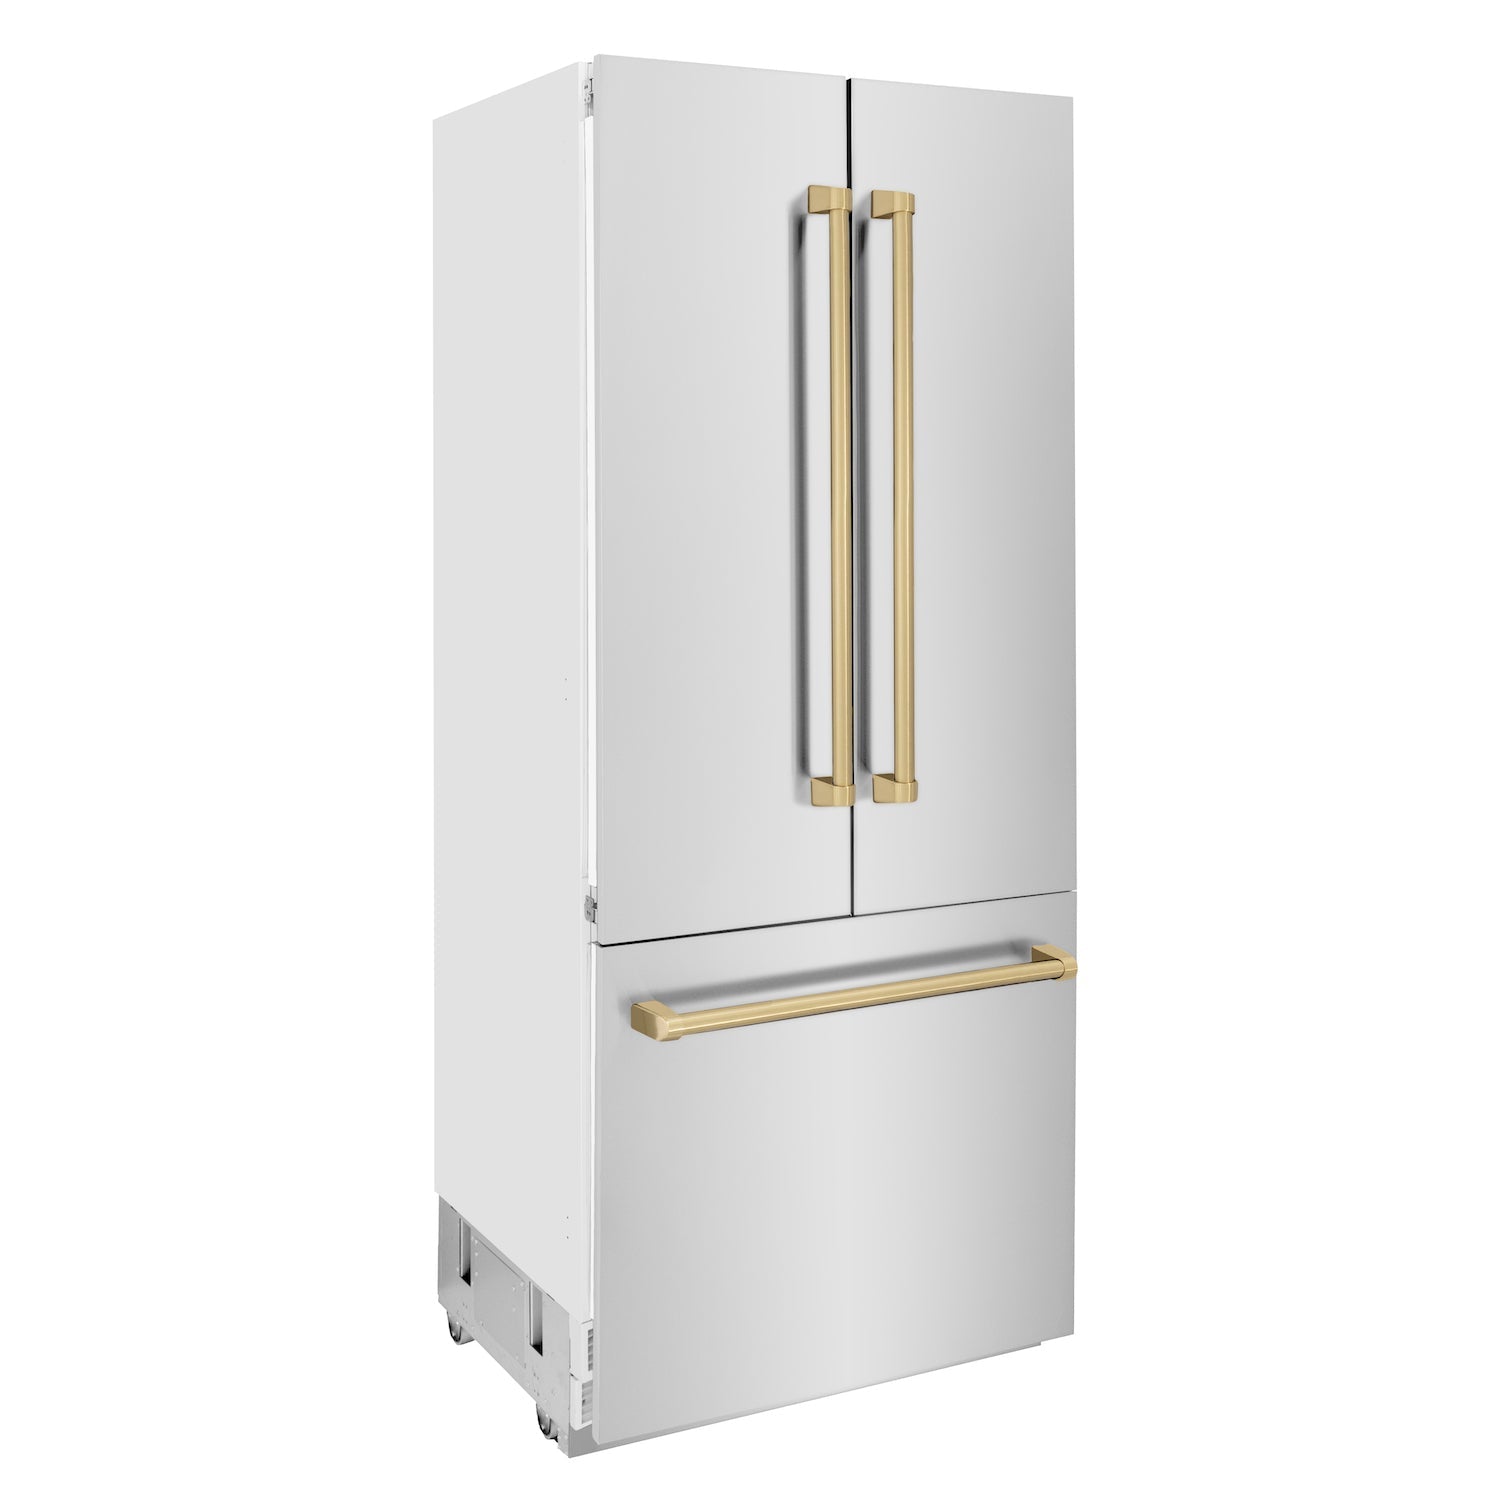 ZLINE Refrigeration – ZLINE Kitchen and Bath